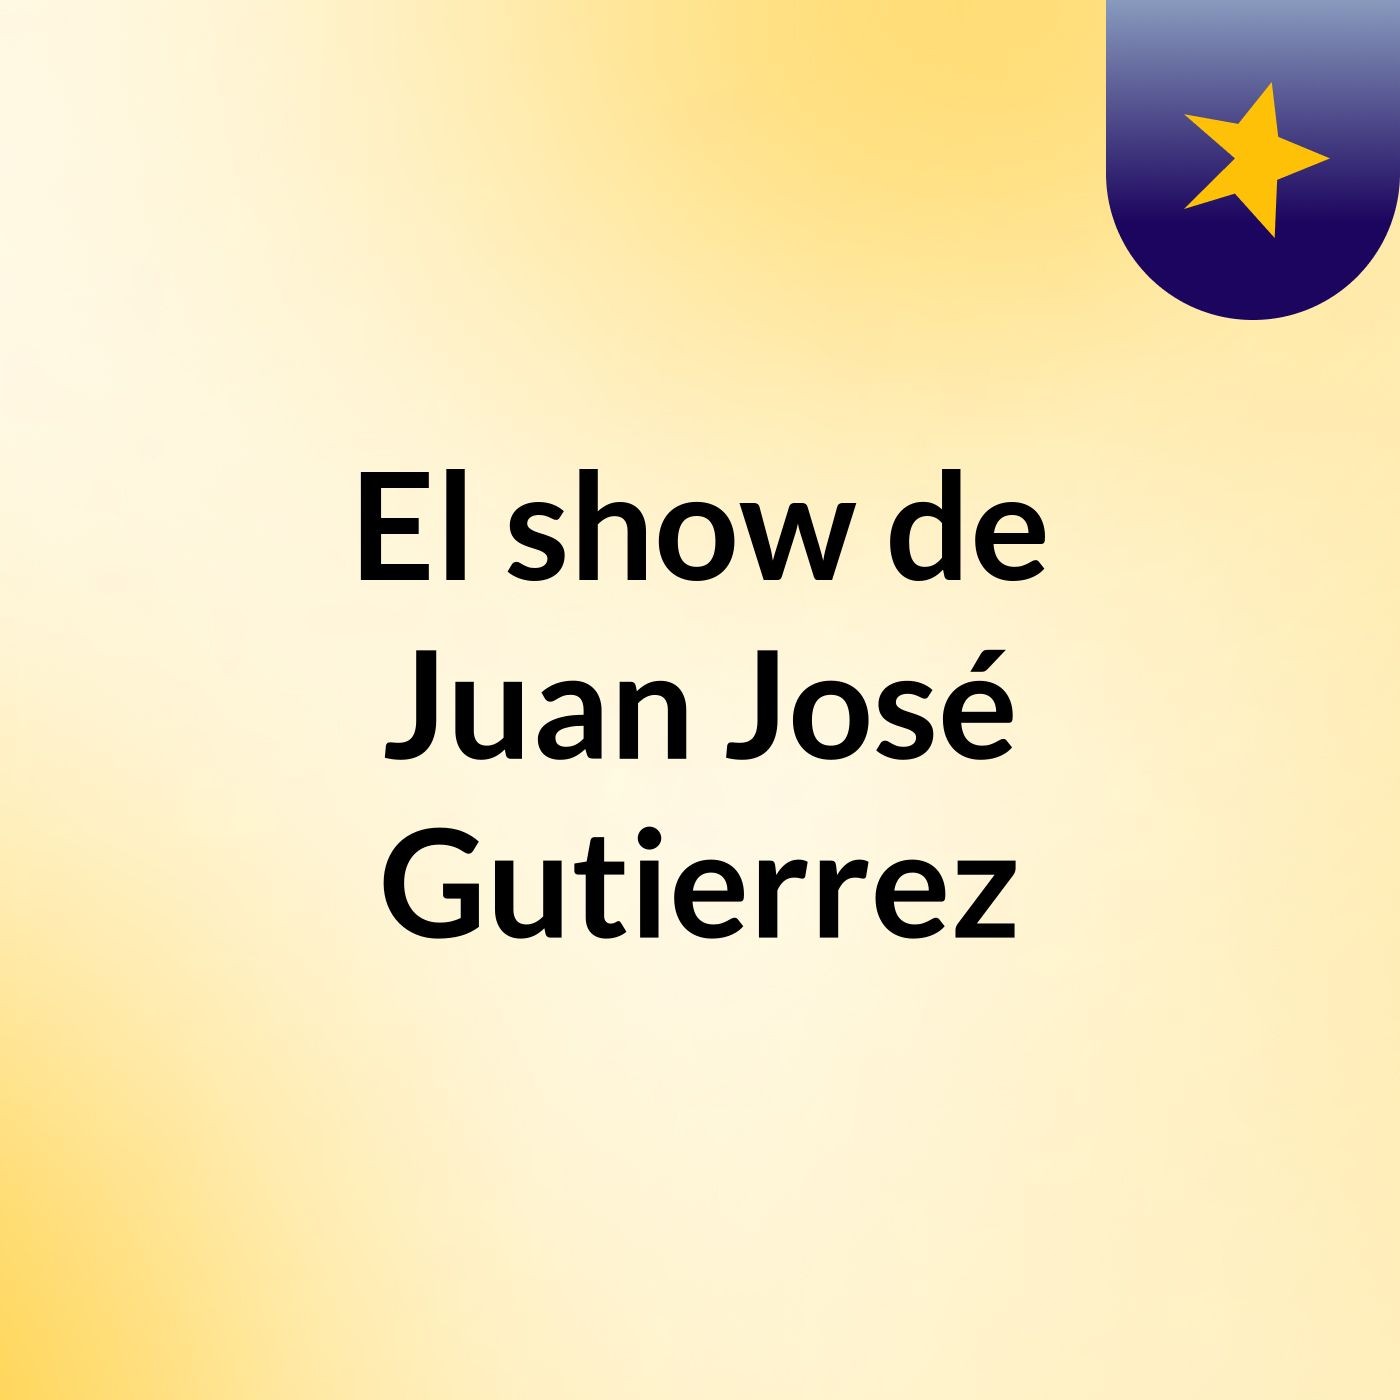 El show de Juan José Gutierrez